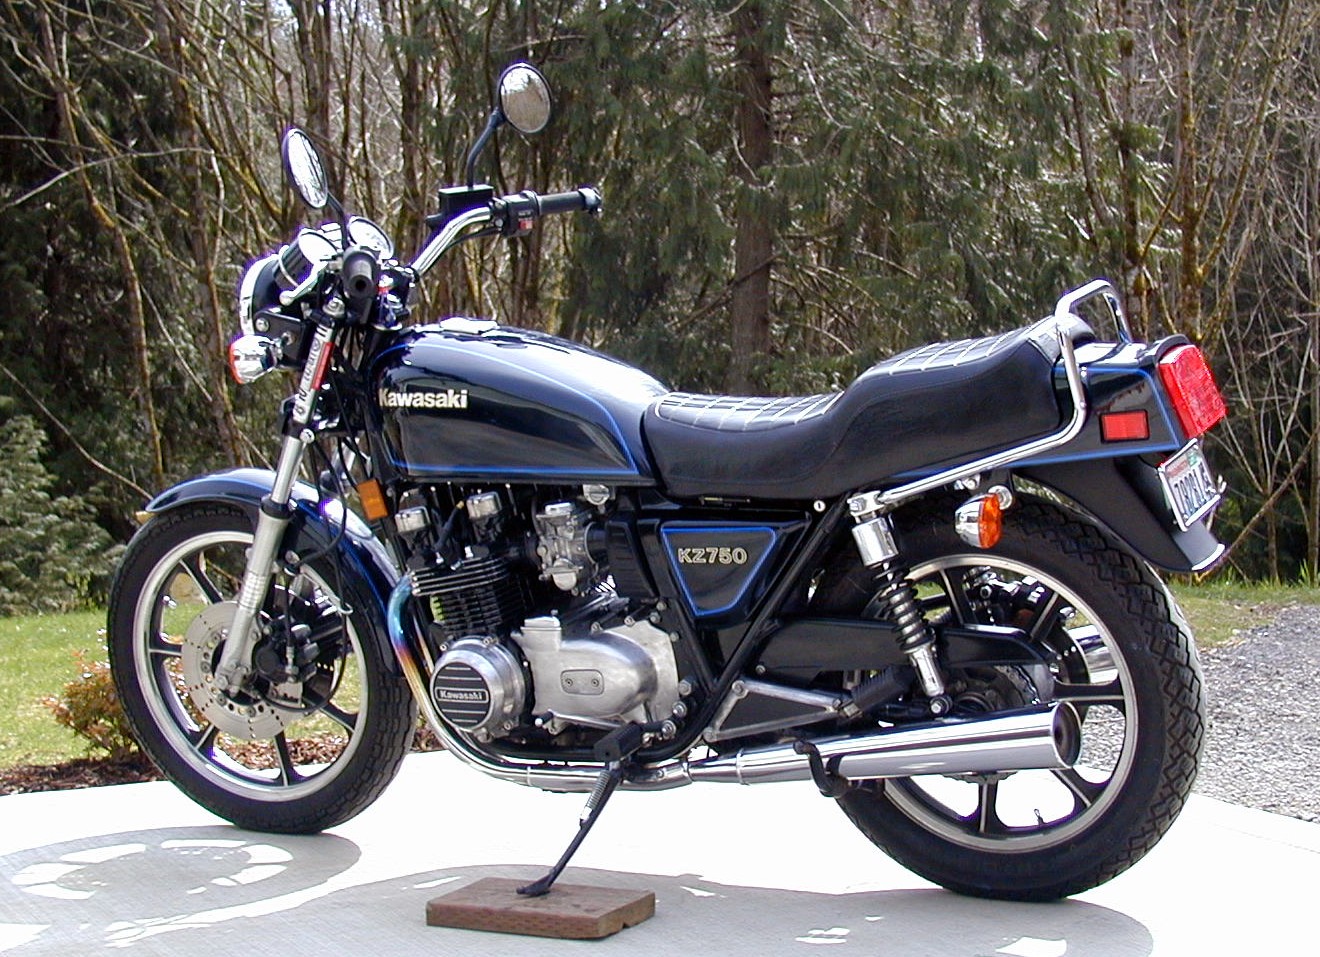 1982 Kawasaki Kz750 Specs | hobbiesxstyle